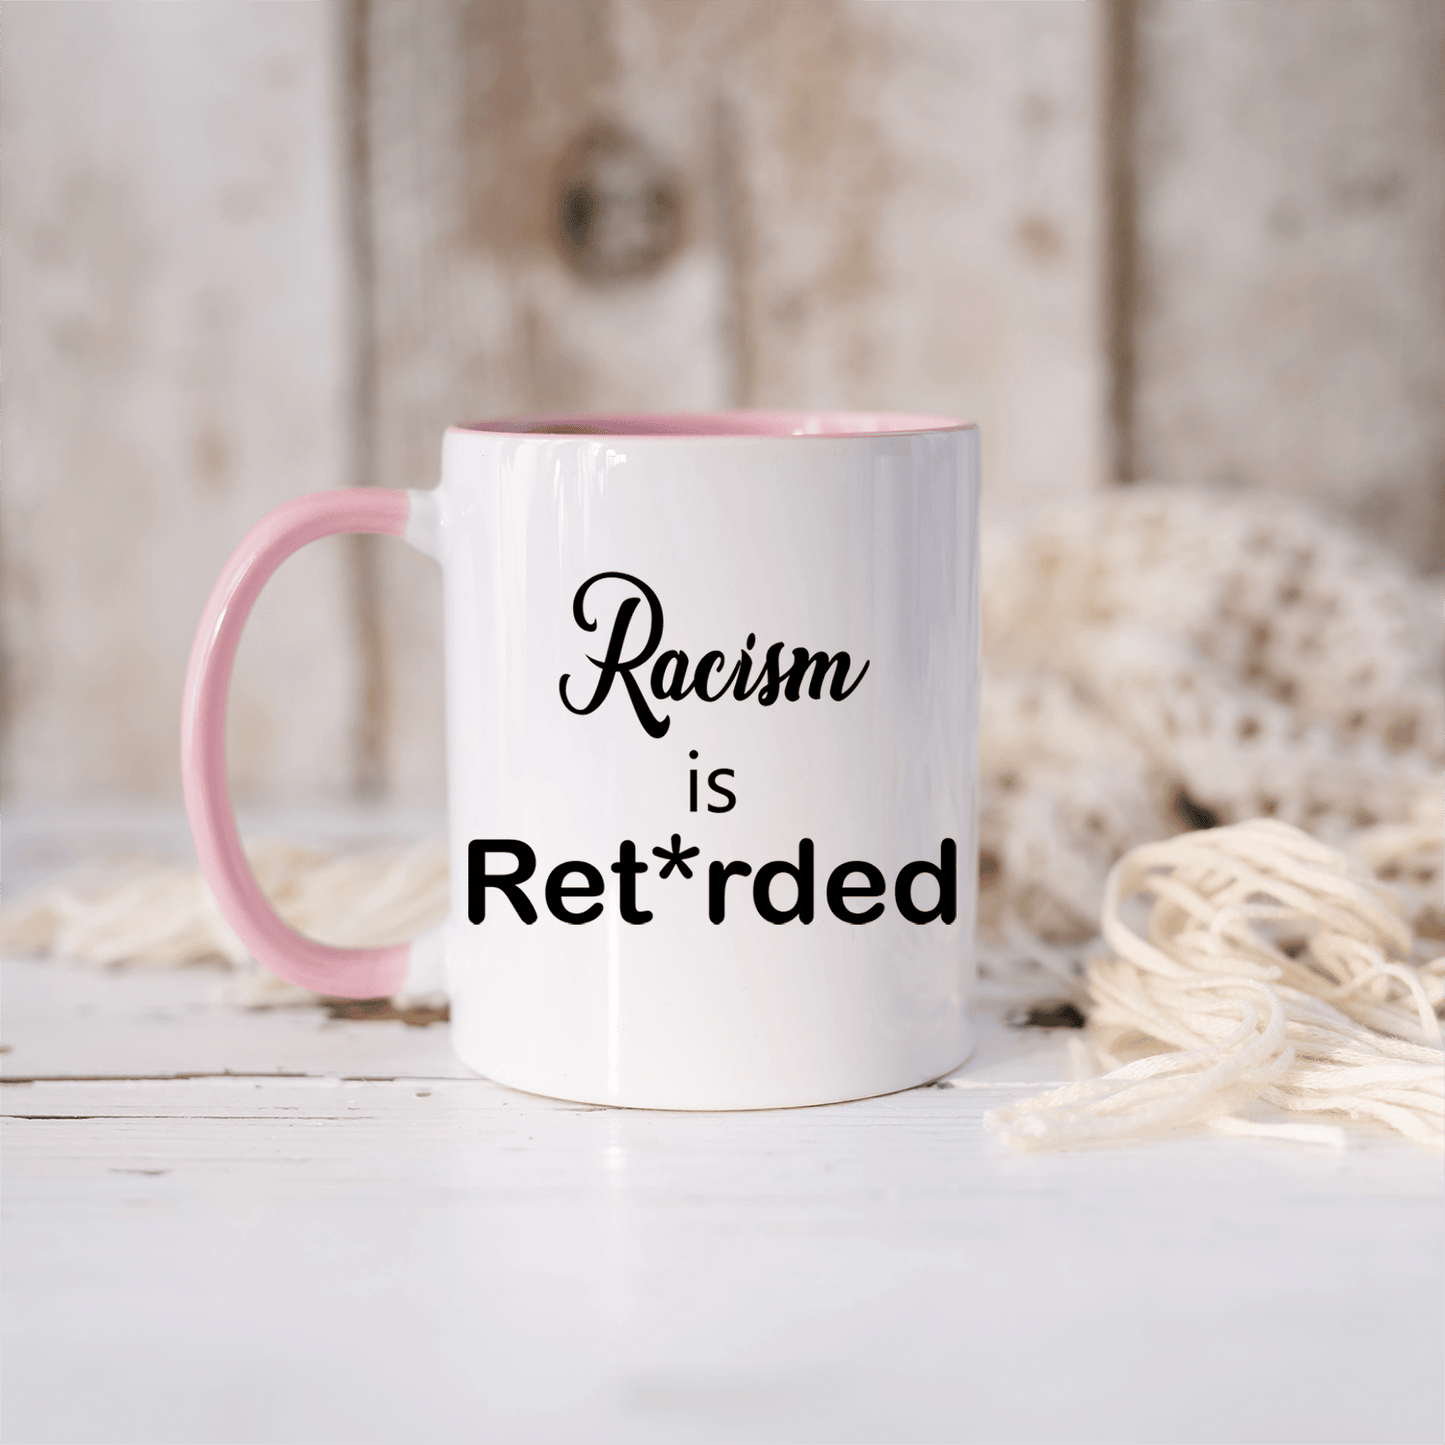 R@cism Is Retarded - Coffee Mug